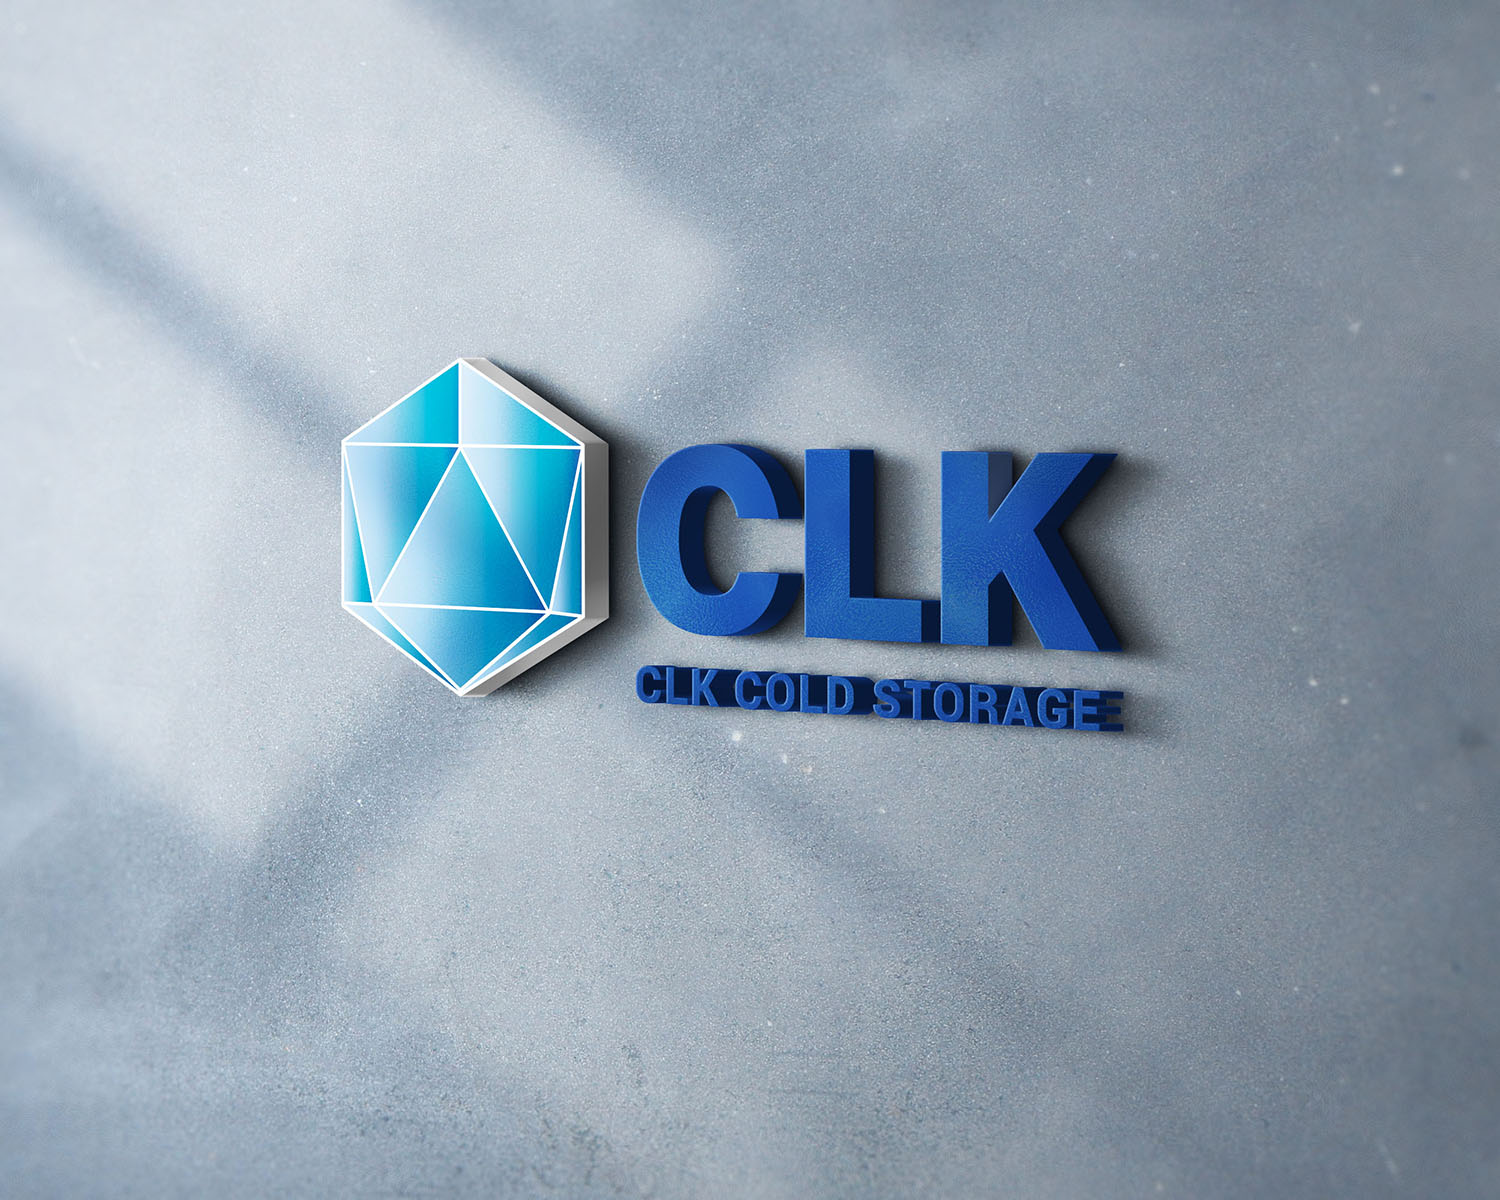 Thiết kế logo công ty CLK